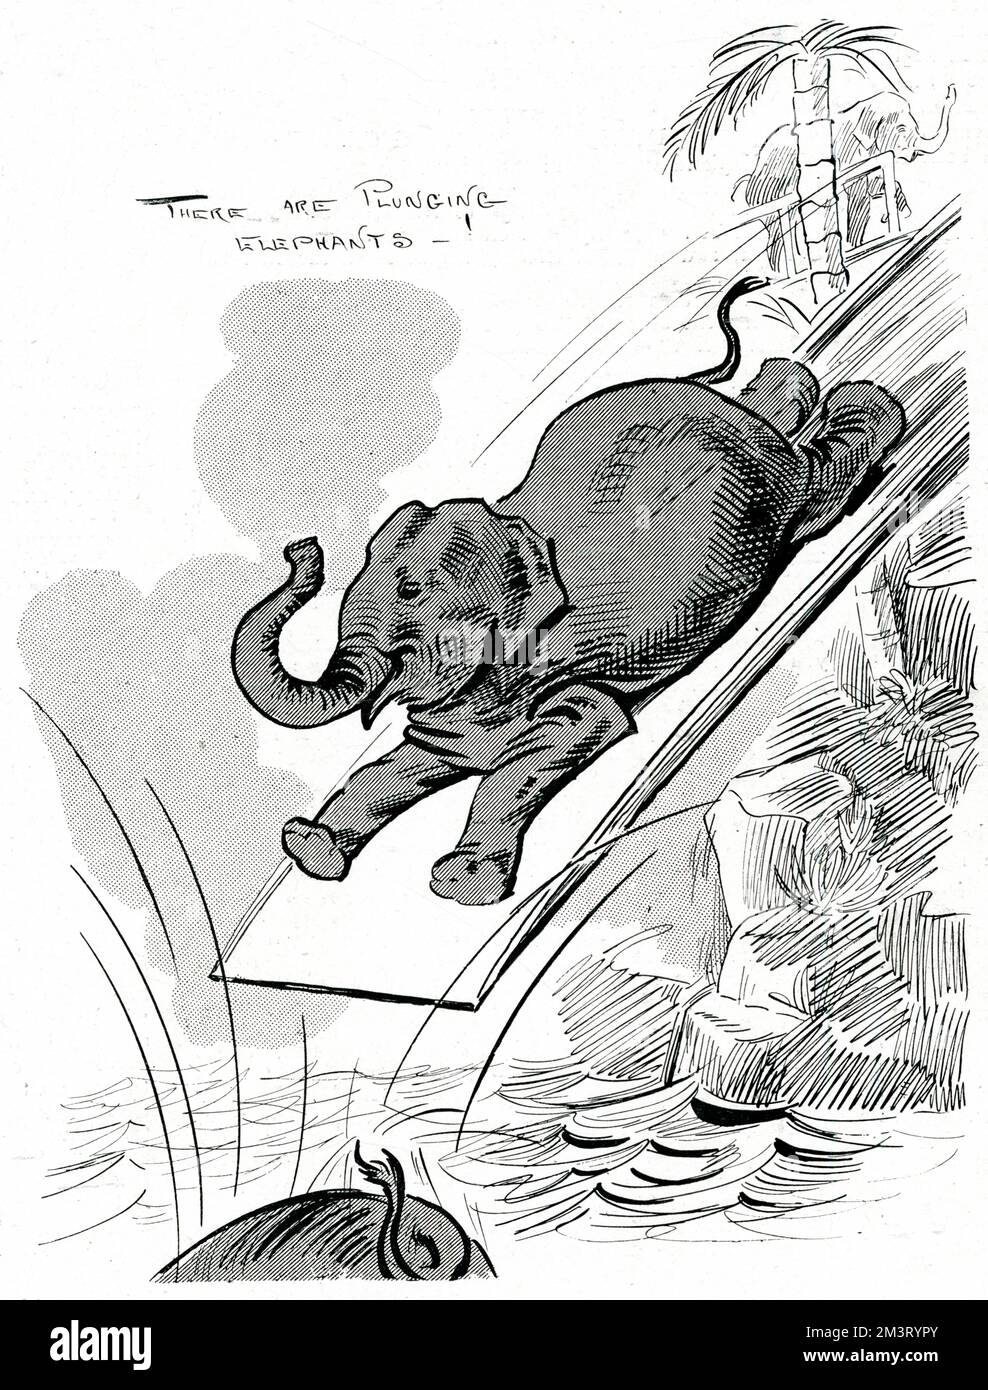 Der Abdruck der tauchenden Elefanten, der 1904 eine Sensation am London Hippodrome hervorgerufen hat. Das Theater, das sich in seinem ersten Jahrzehnt nach seiner Eröffnung im Jahr 1900 auf Zirkussorten spezialisiert hat, war bekannt für seine Wasserspiele und Tierdarbietungen. Die Elefanten kletterten eine Rampe hinauf und rutschten eine 45-Grad-Rutsche hinunter in den berühmten Wassertank des Hippodroms vor dem Publikum. Datum: 1904 Stockfoto